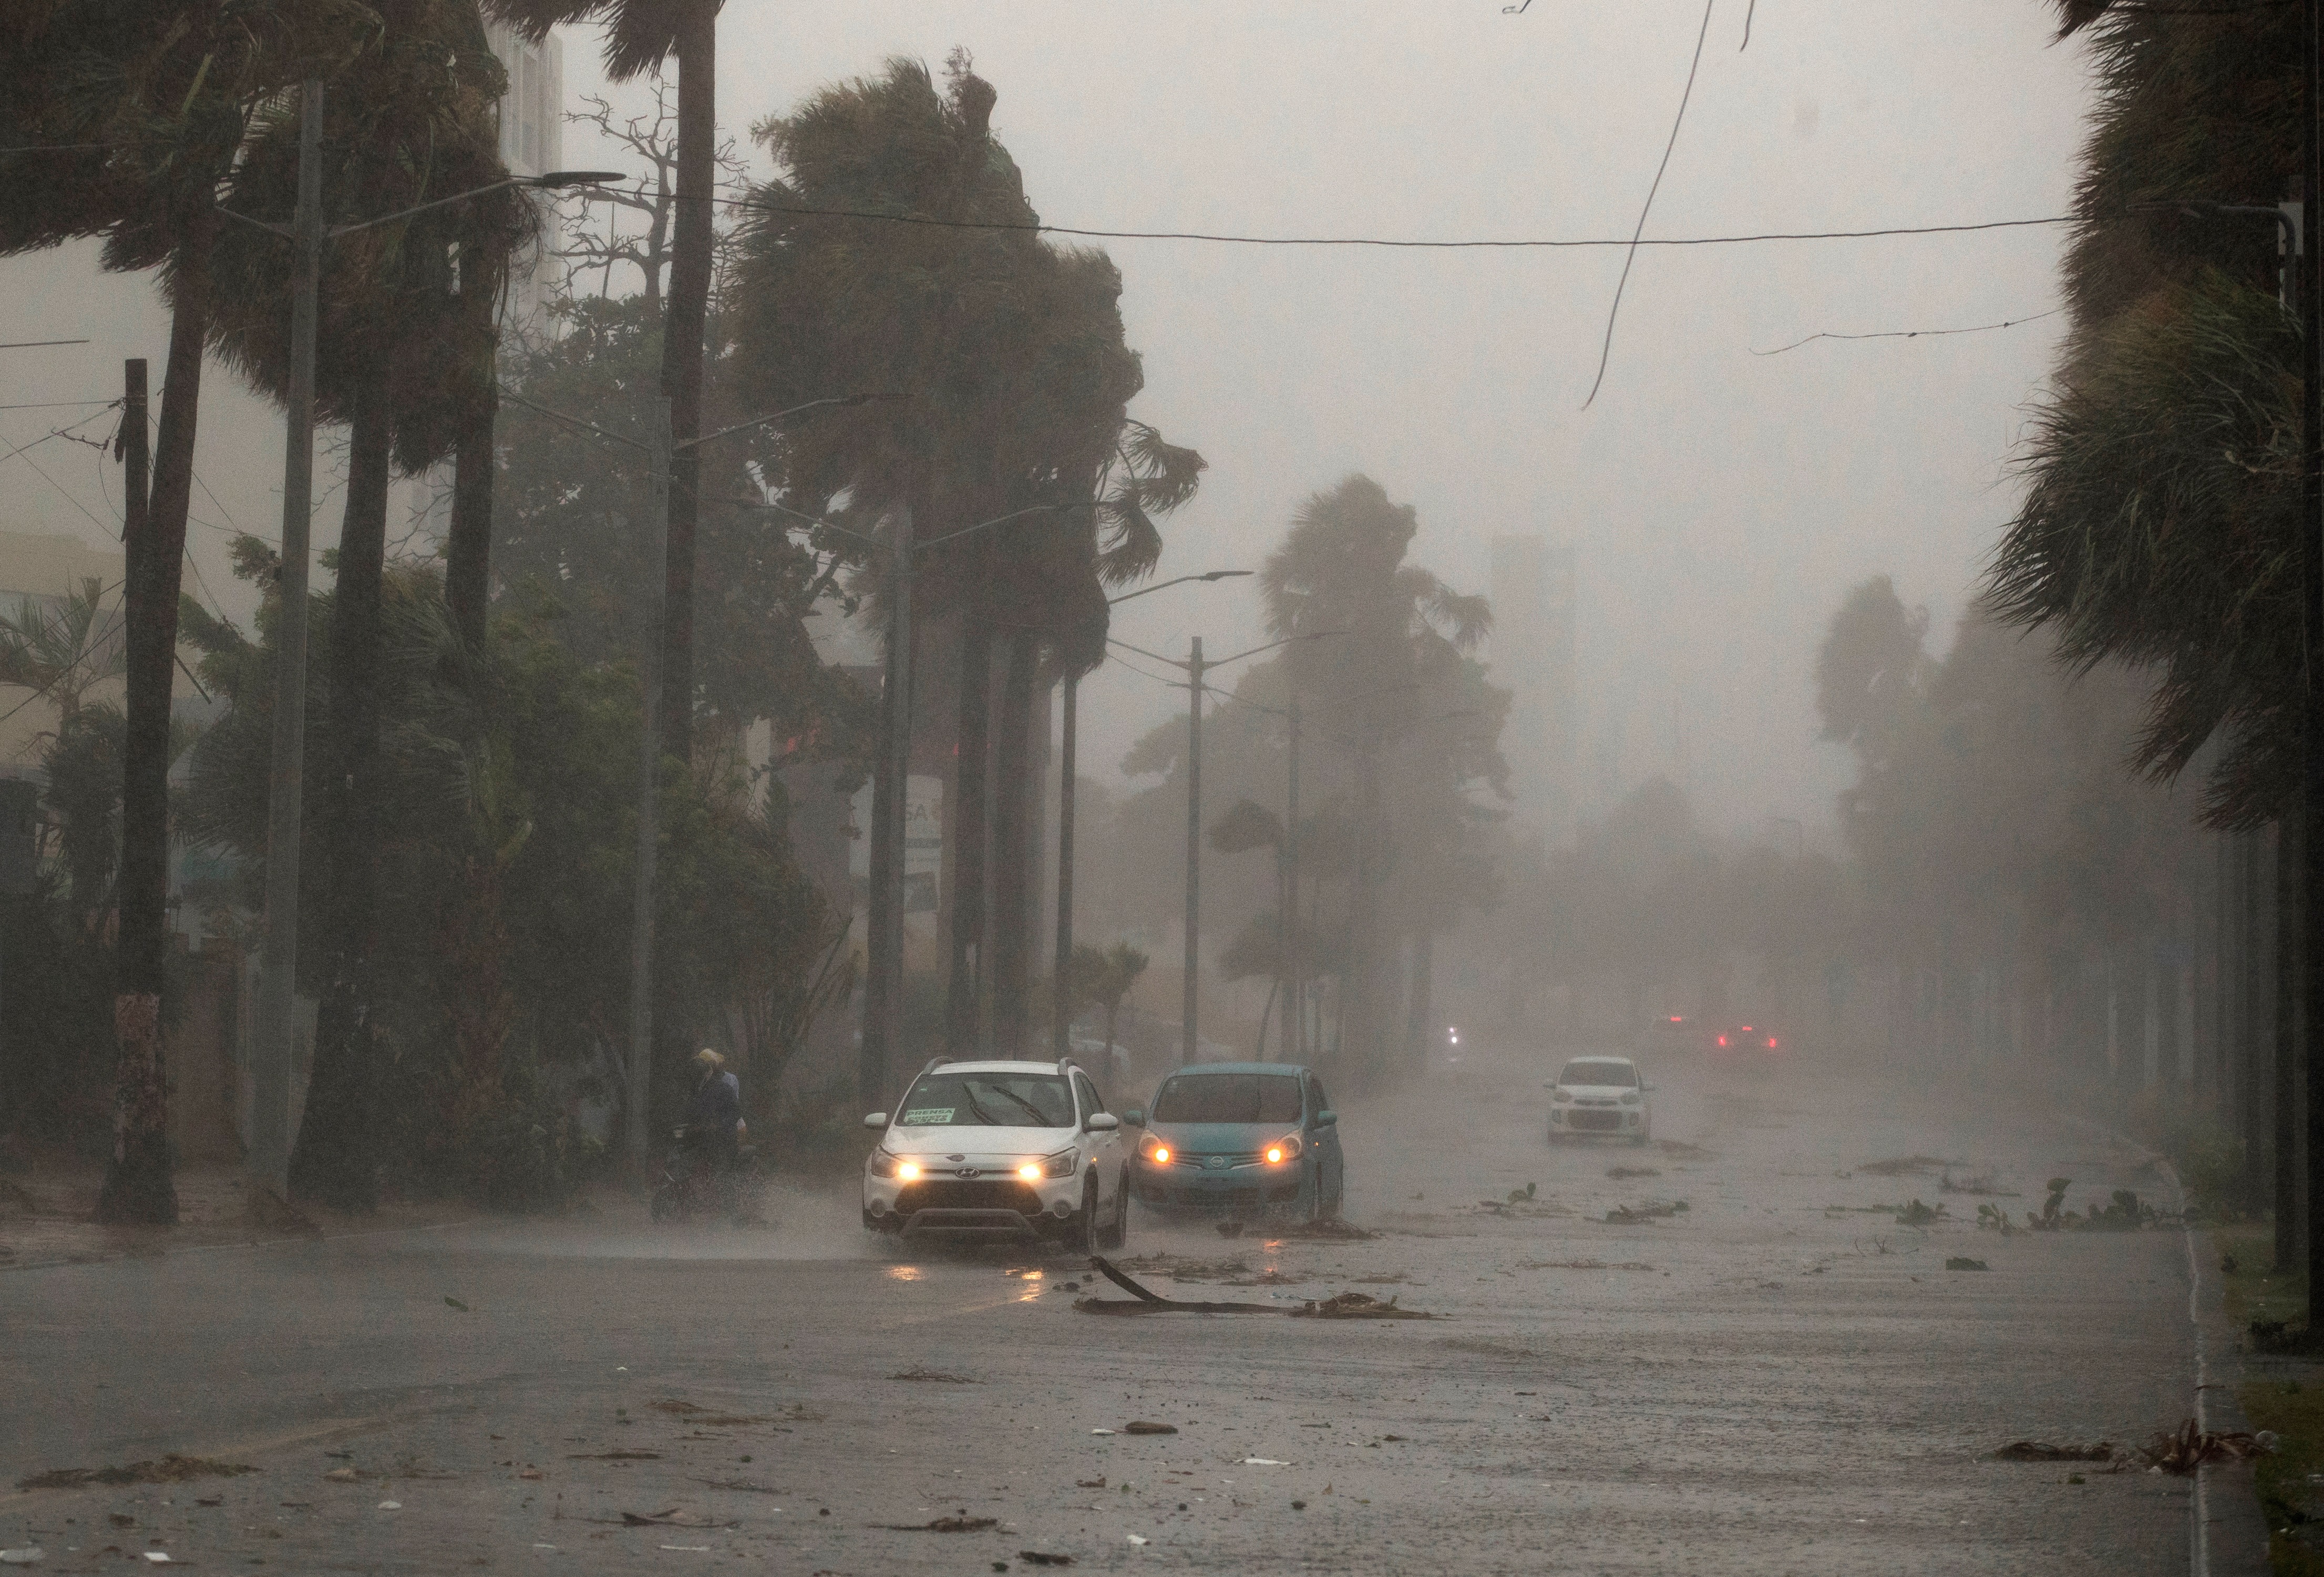 Vista de uuna intensa lluvia durante el paso de una tormenta tropical, en una fotografía de archivo. EFE/ Orlando Barría
